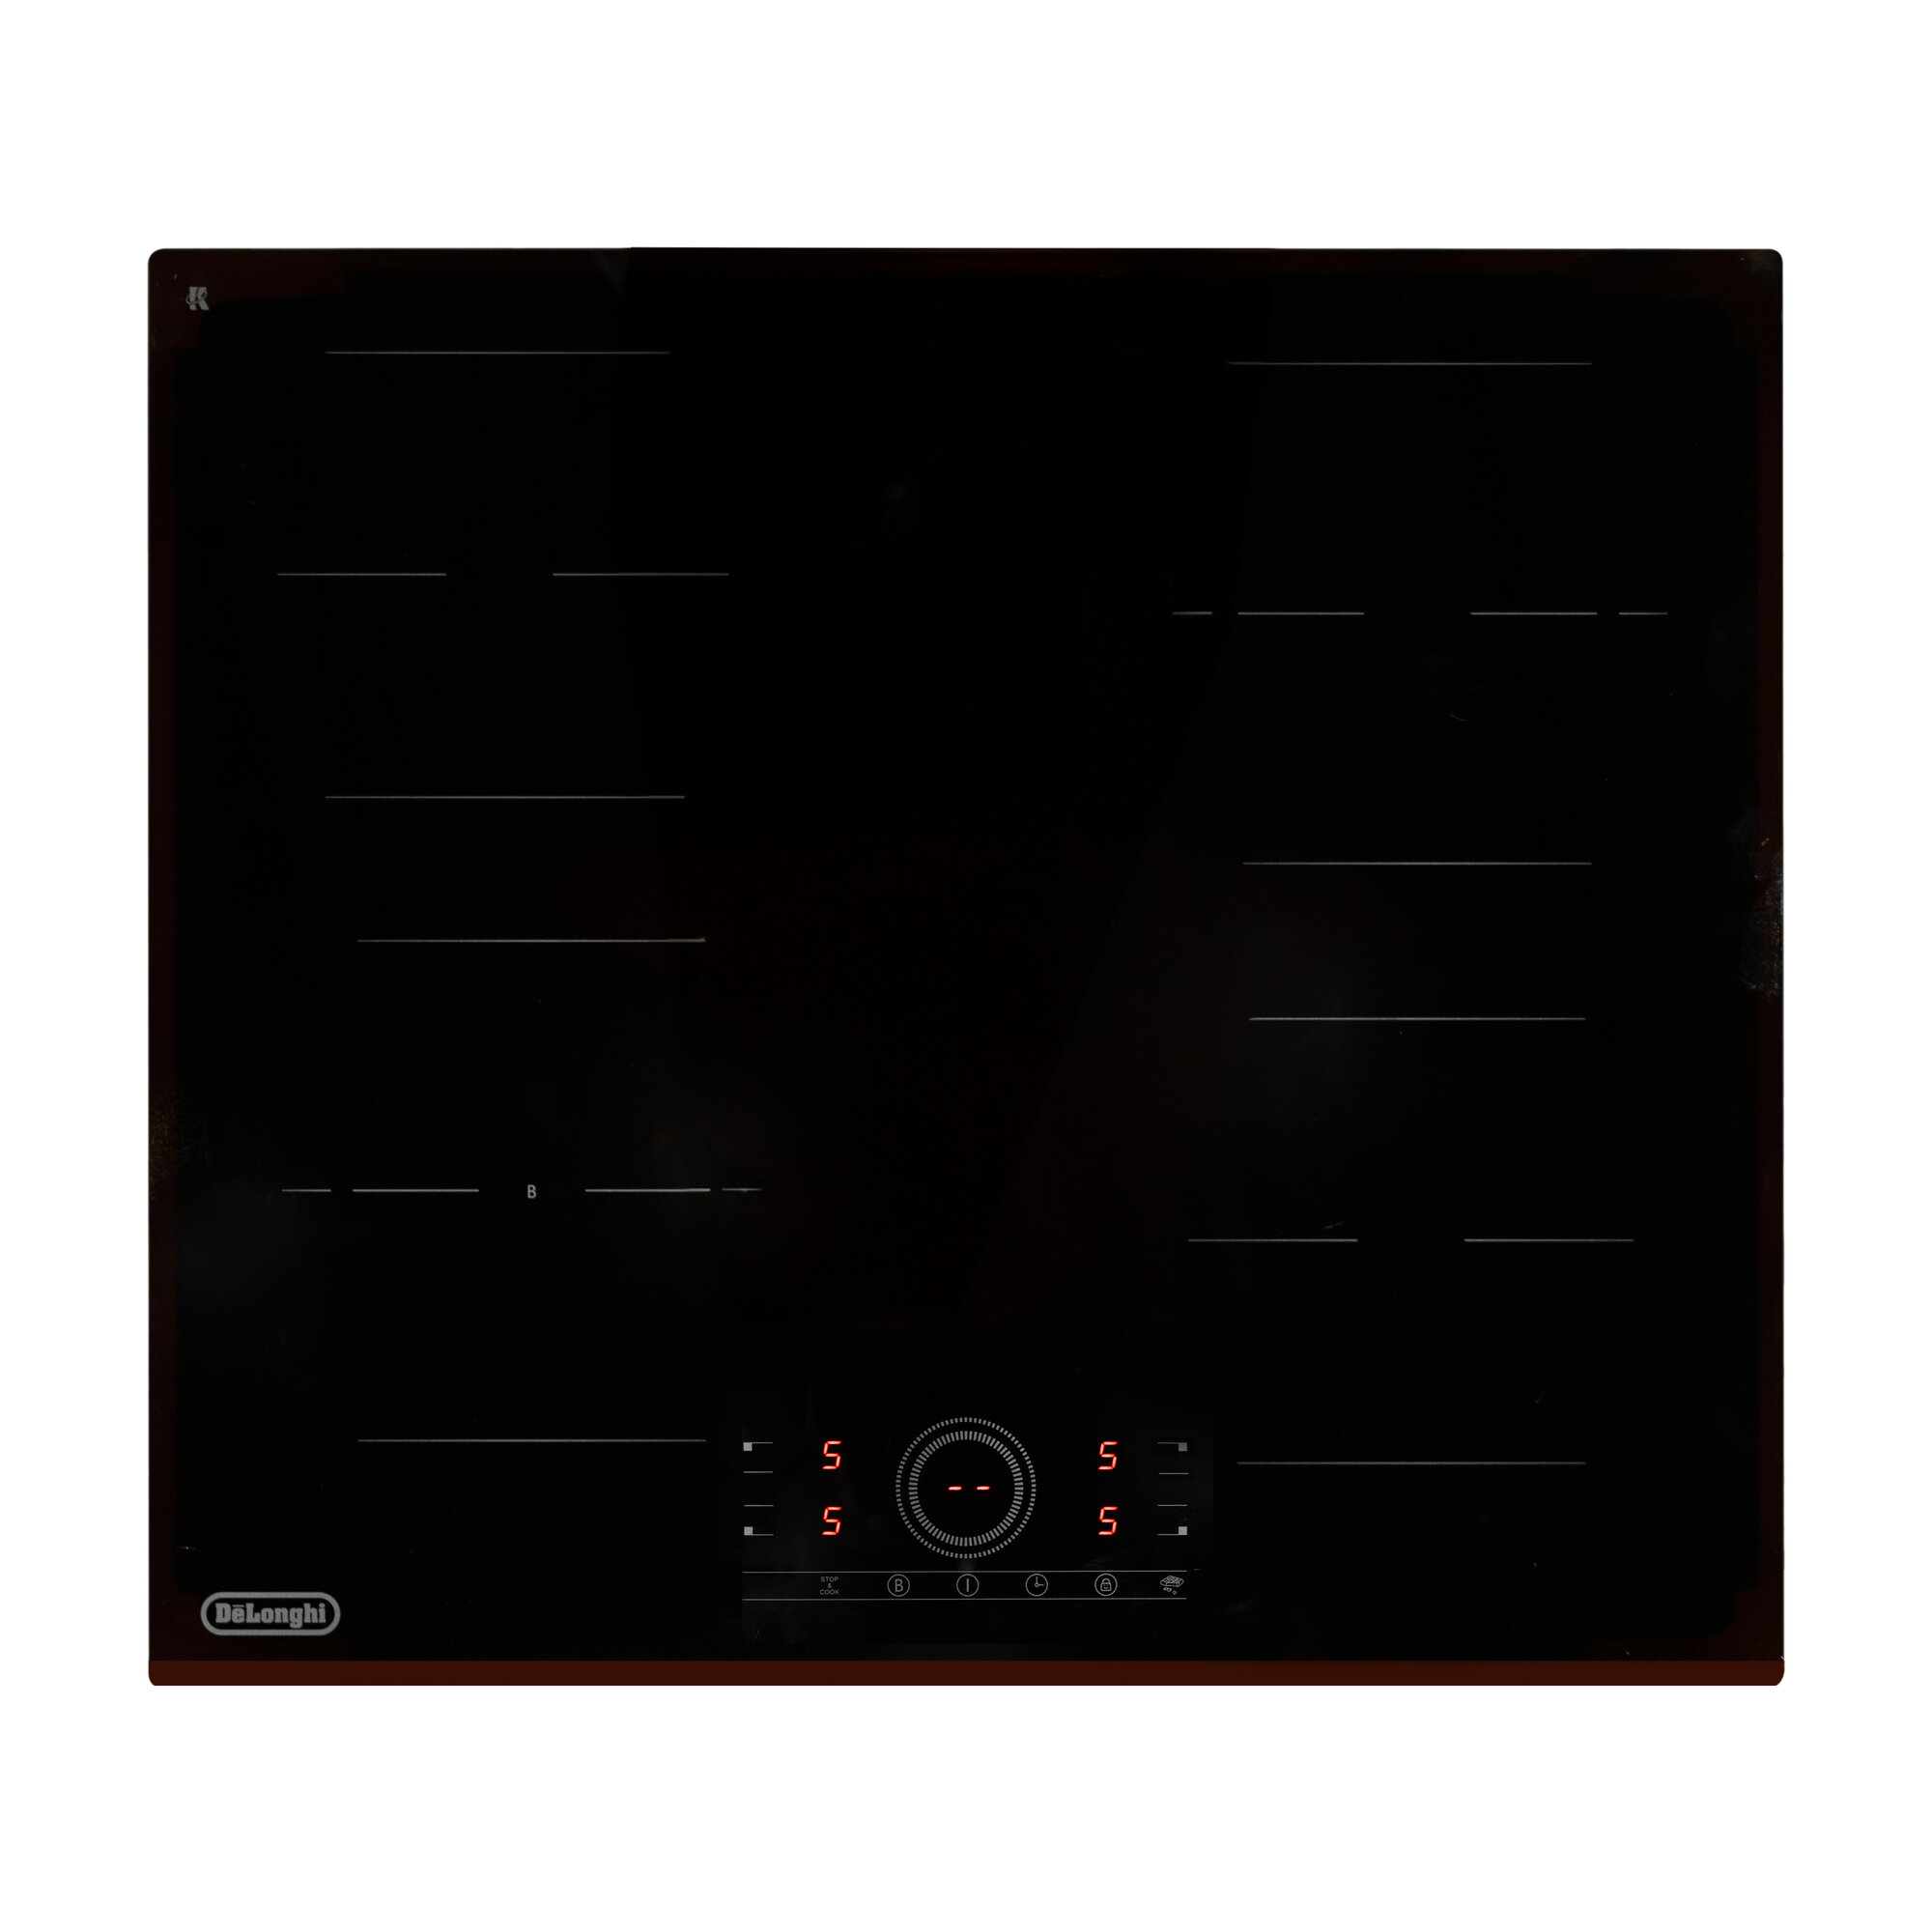 Индукционная варочная панель DeLonghi ELETTRA 1B0P CR, 60 см, черная, Функция Booster, сенсорное управление, Функция Melting